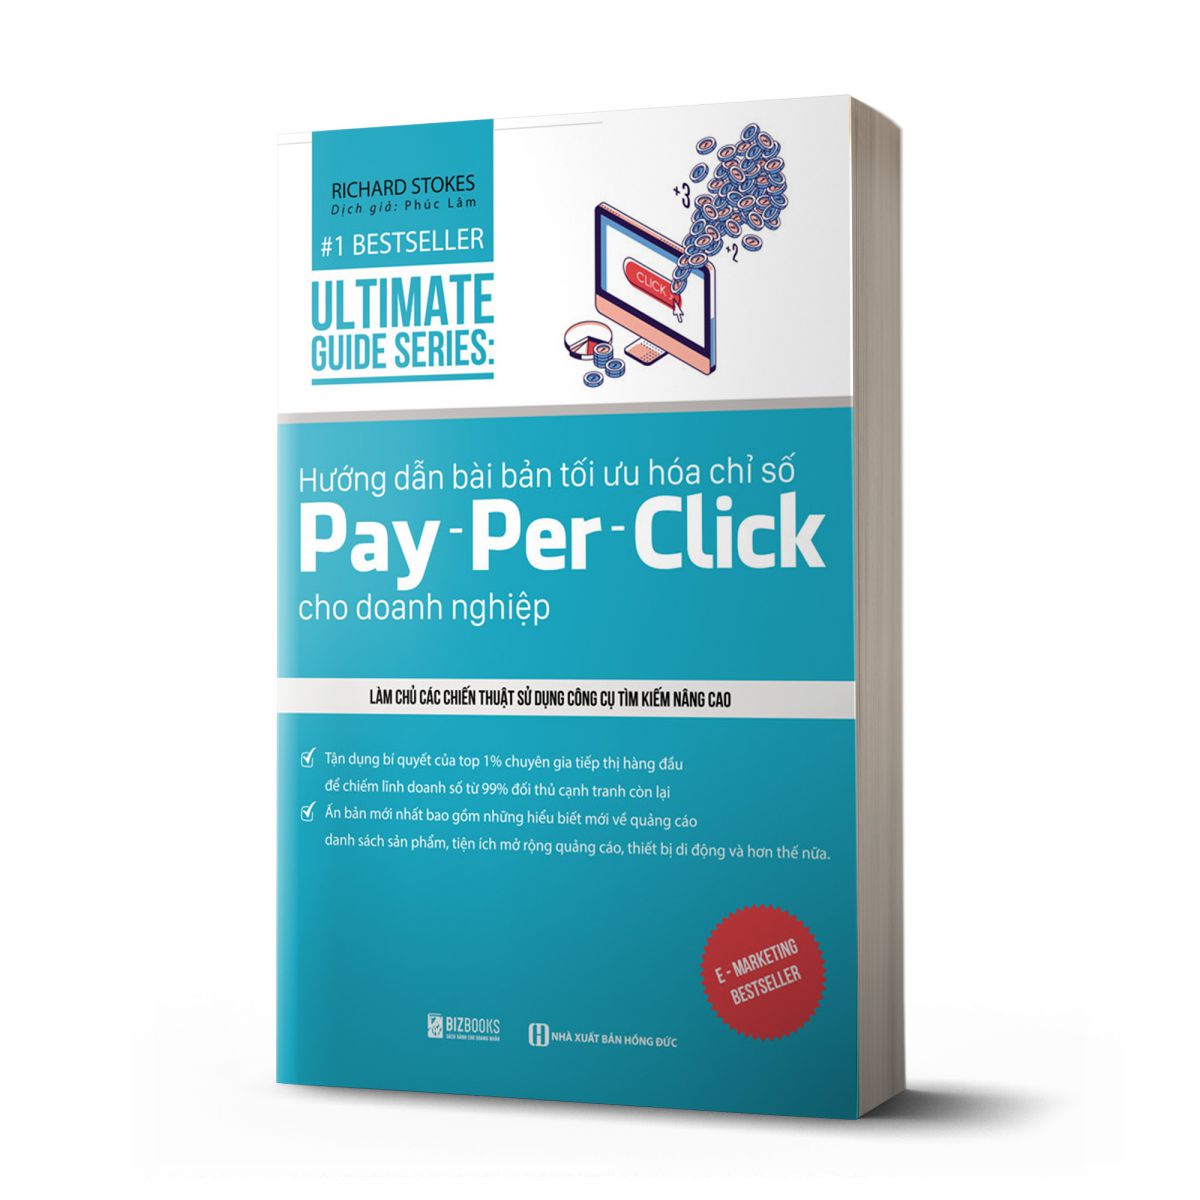 UltimateGuide Series: Hướng dẫn bài bản tối ưu hóa chỉ số Pay - per – Click cho doanh nghiệp 1 